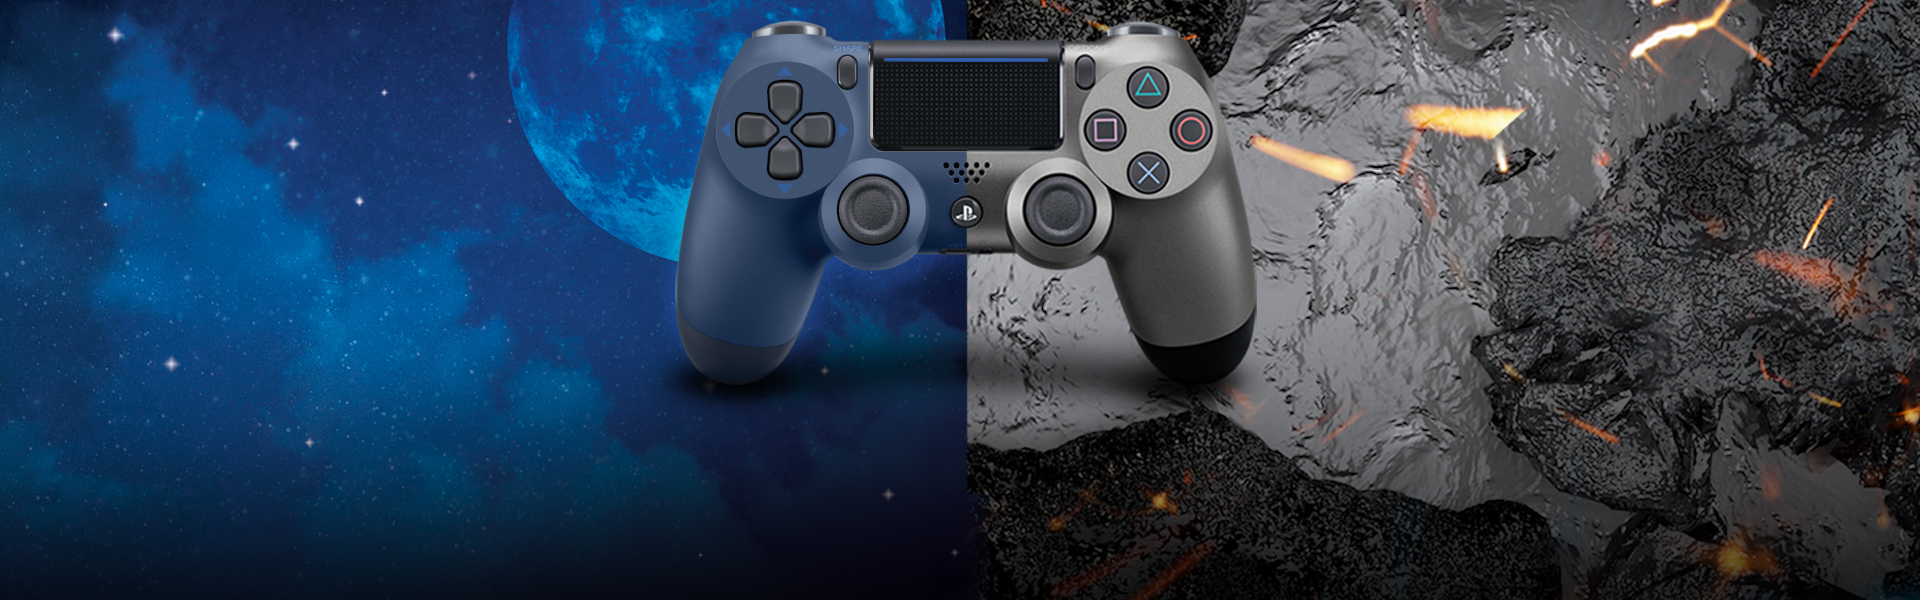 PlayStation lansează două versiuni noi ale controller-ului DUALSHOCK 4